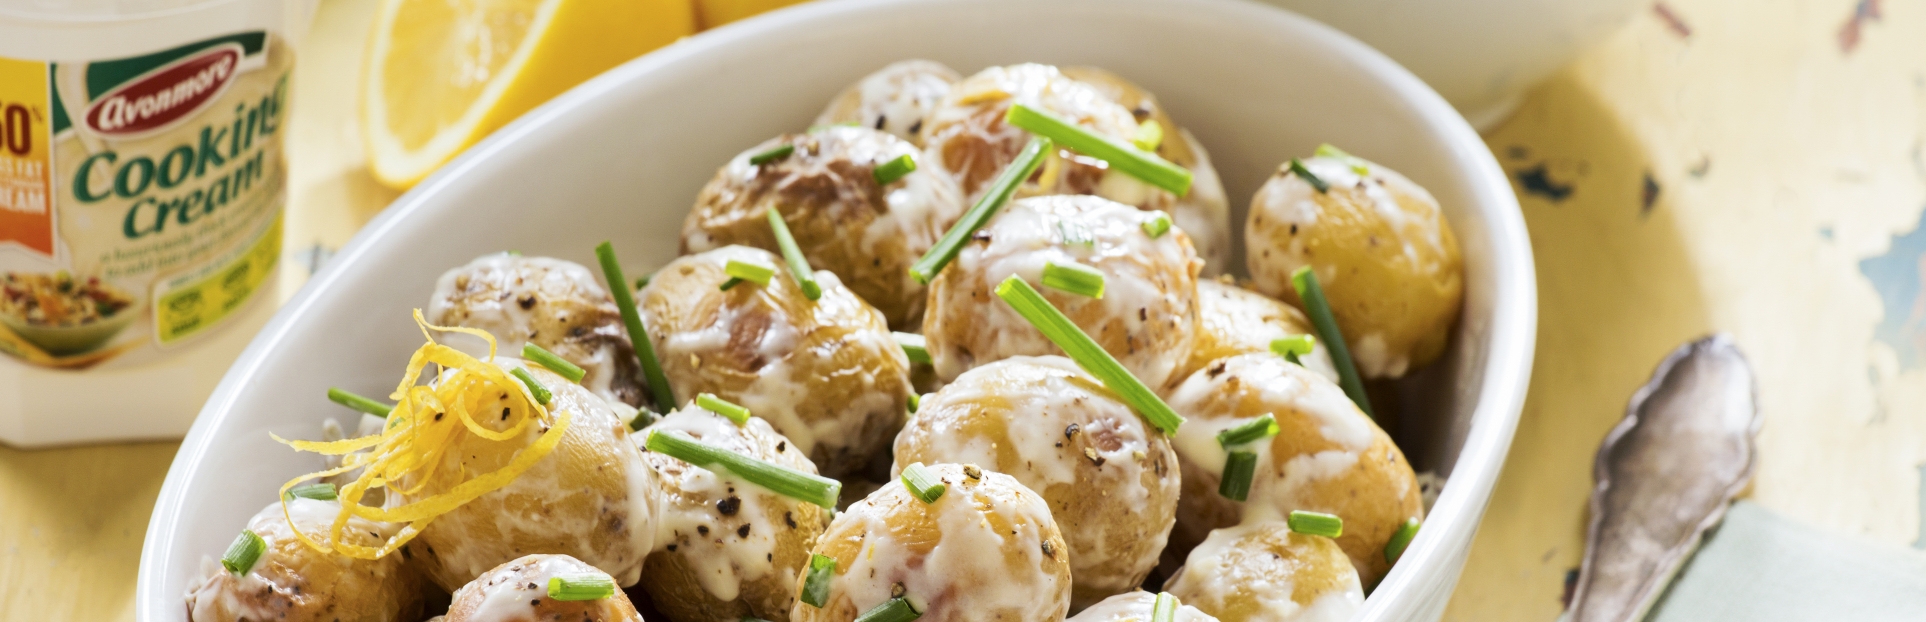 Creamy Garlic Roast Potatoes using Avonmore cooking cream